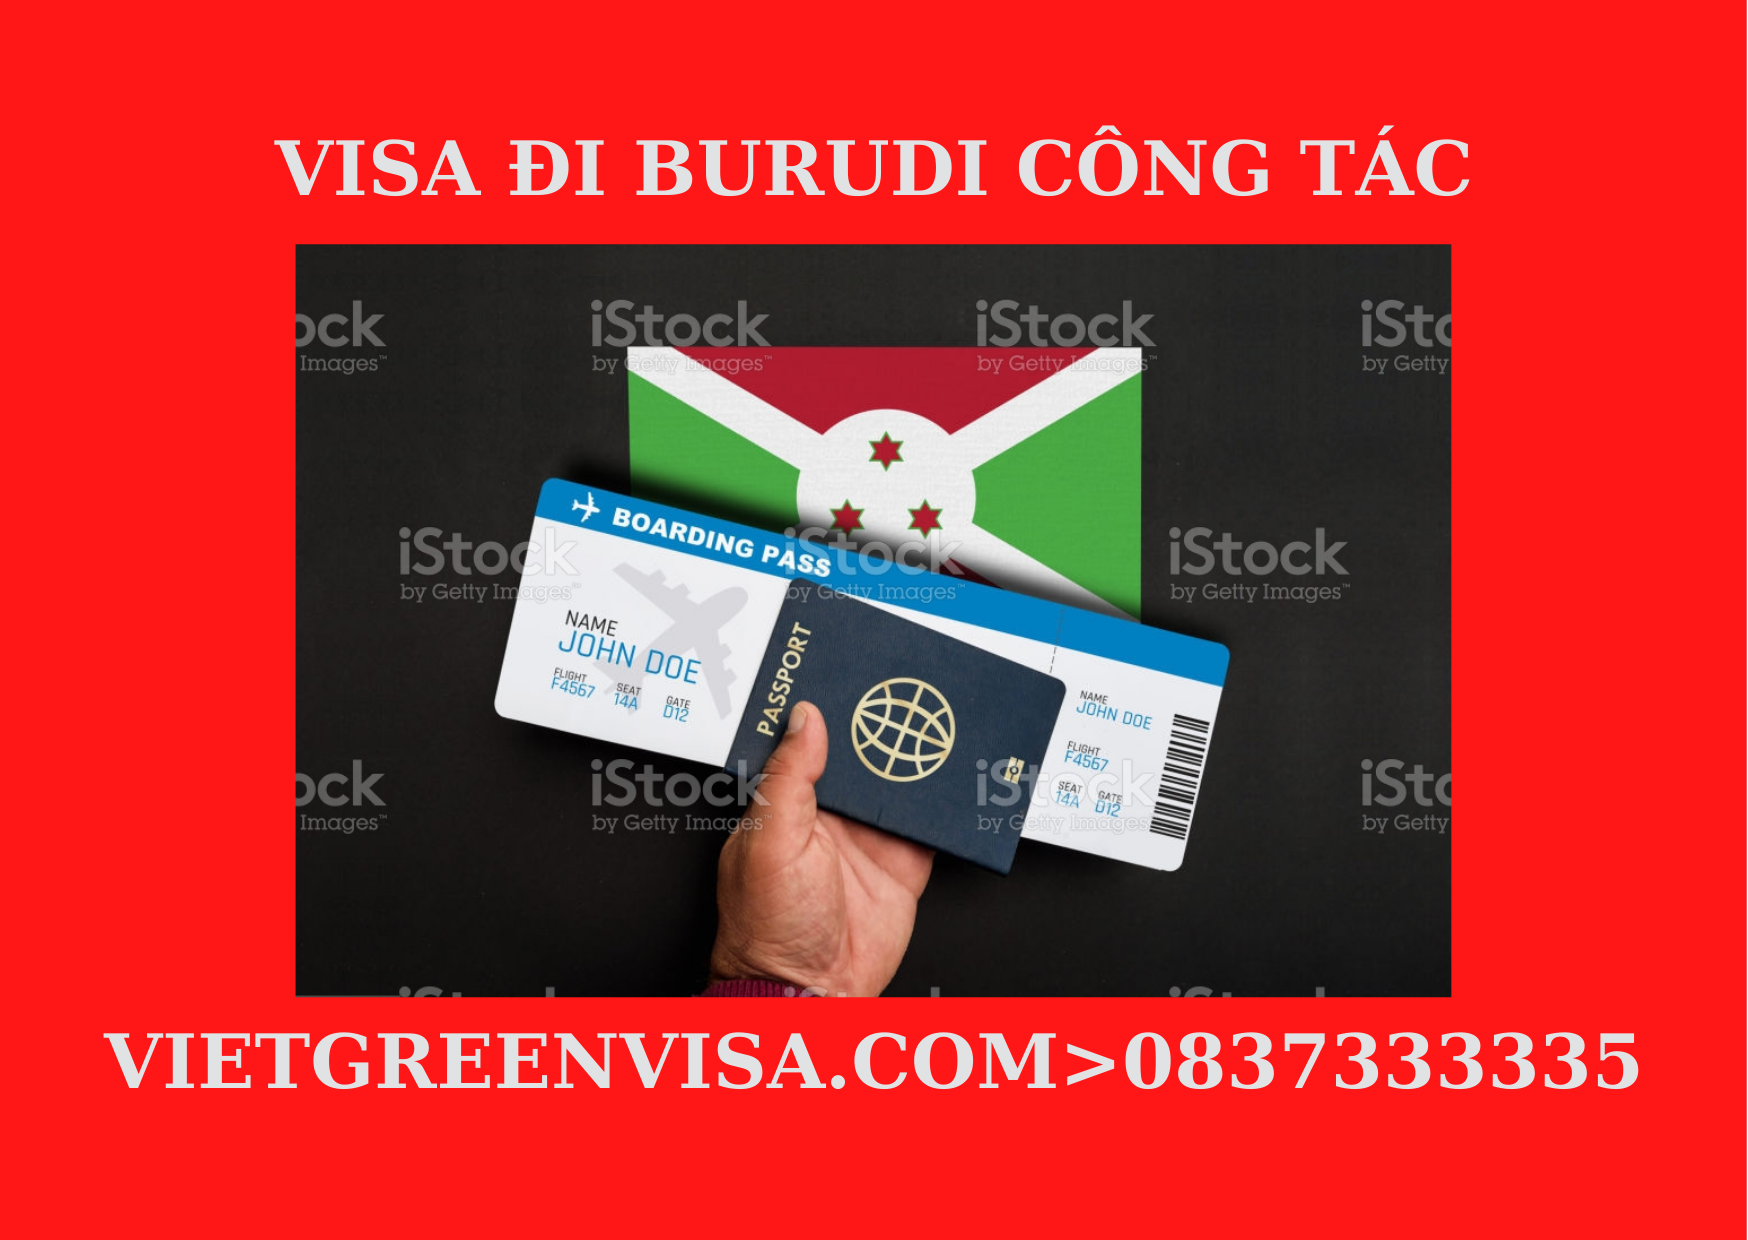 Dịch vụ xin Visa du lịch Burundi uy tín, trọn gói